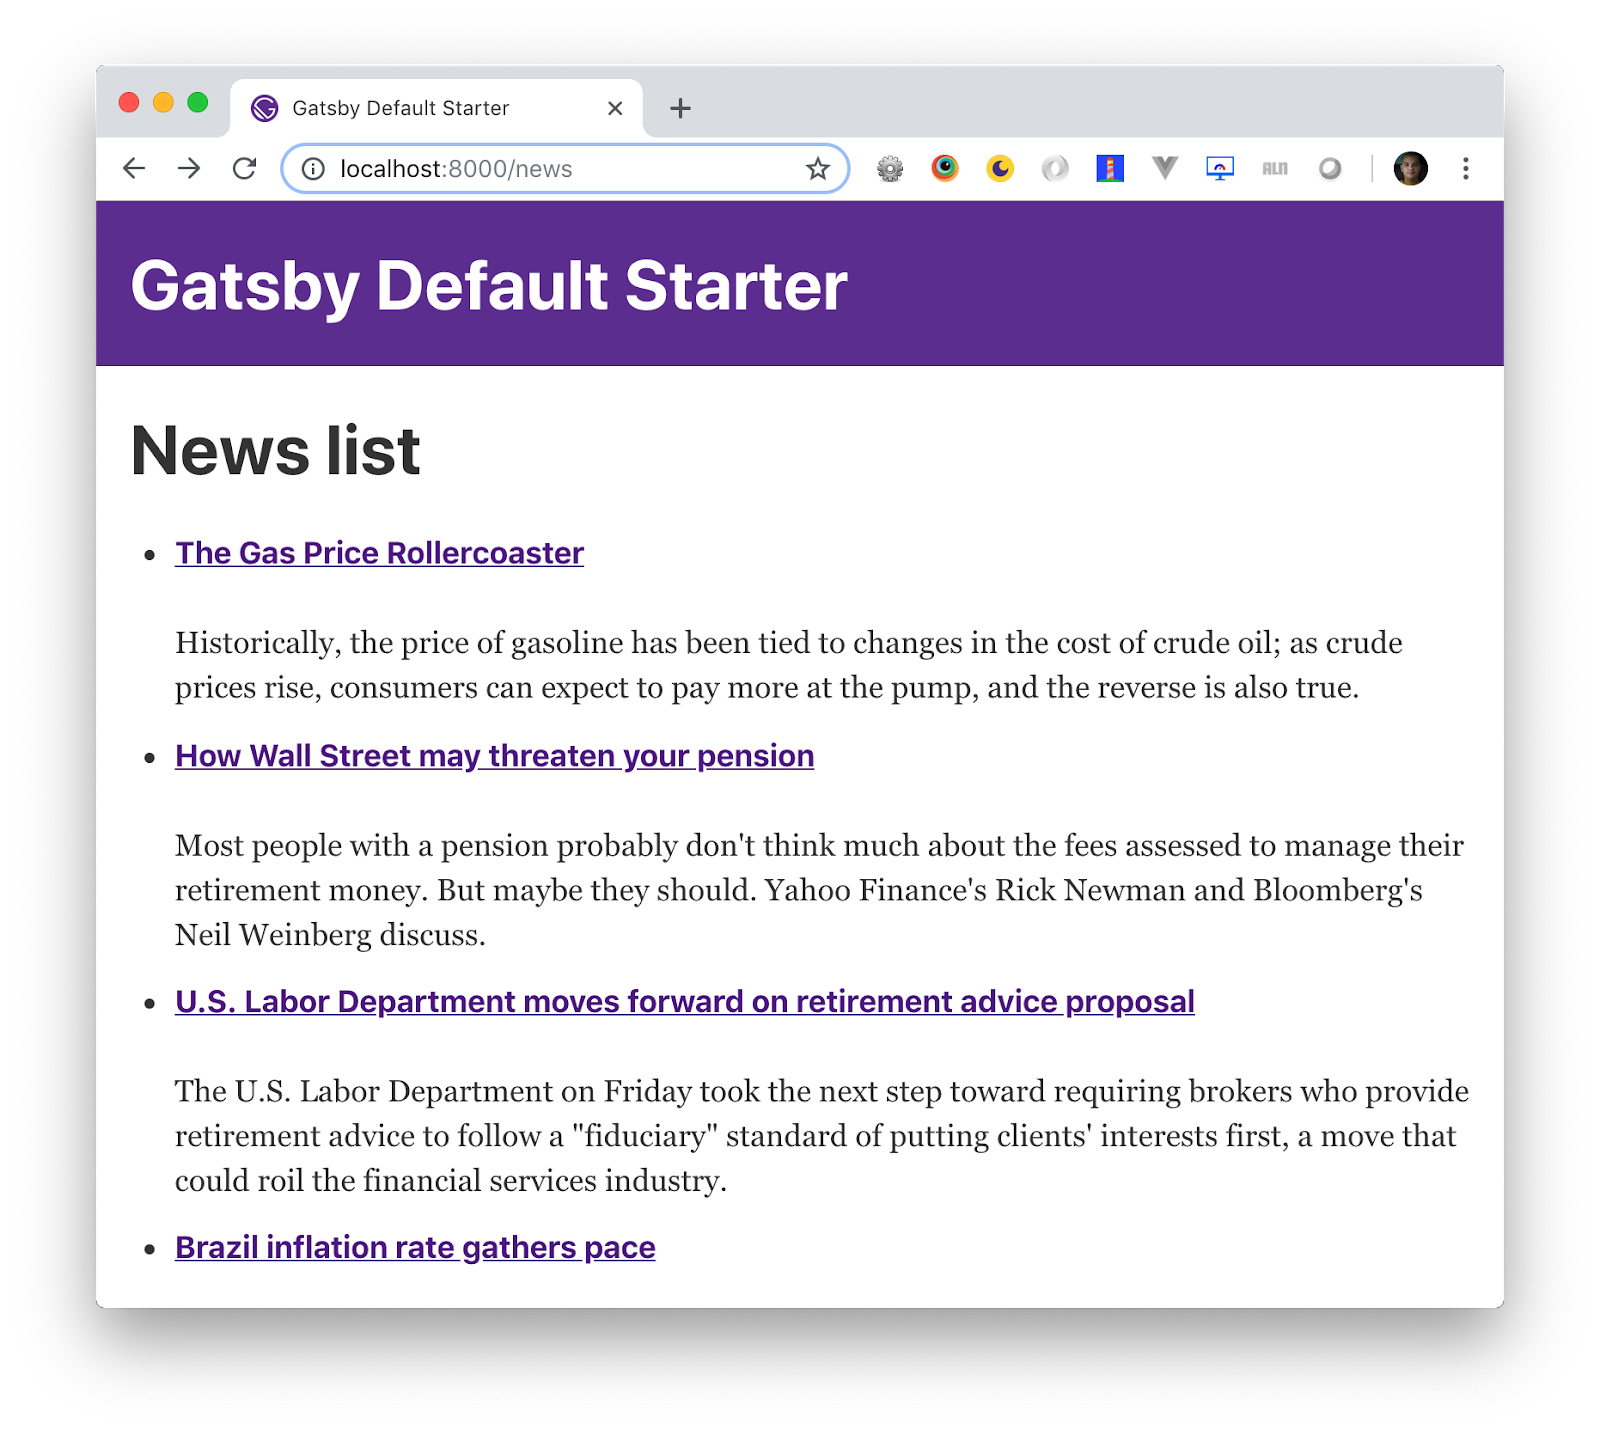 gatsby-default-starter-news